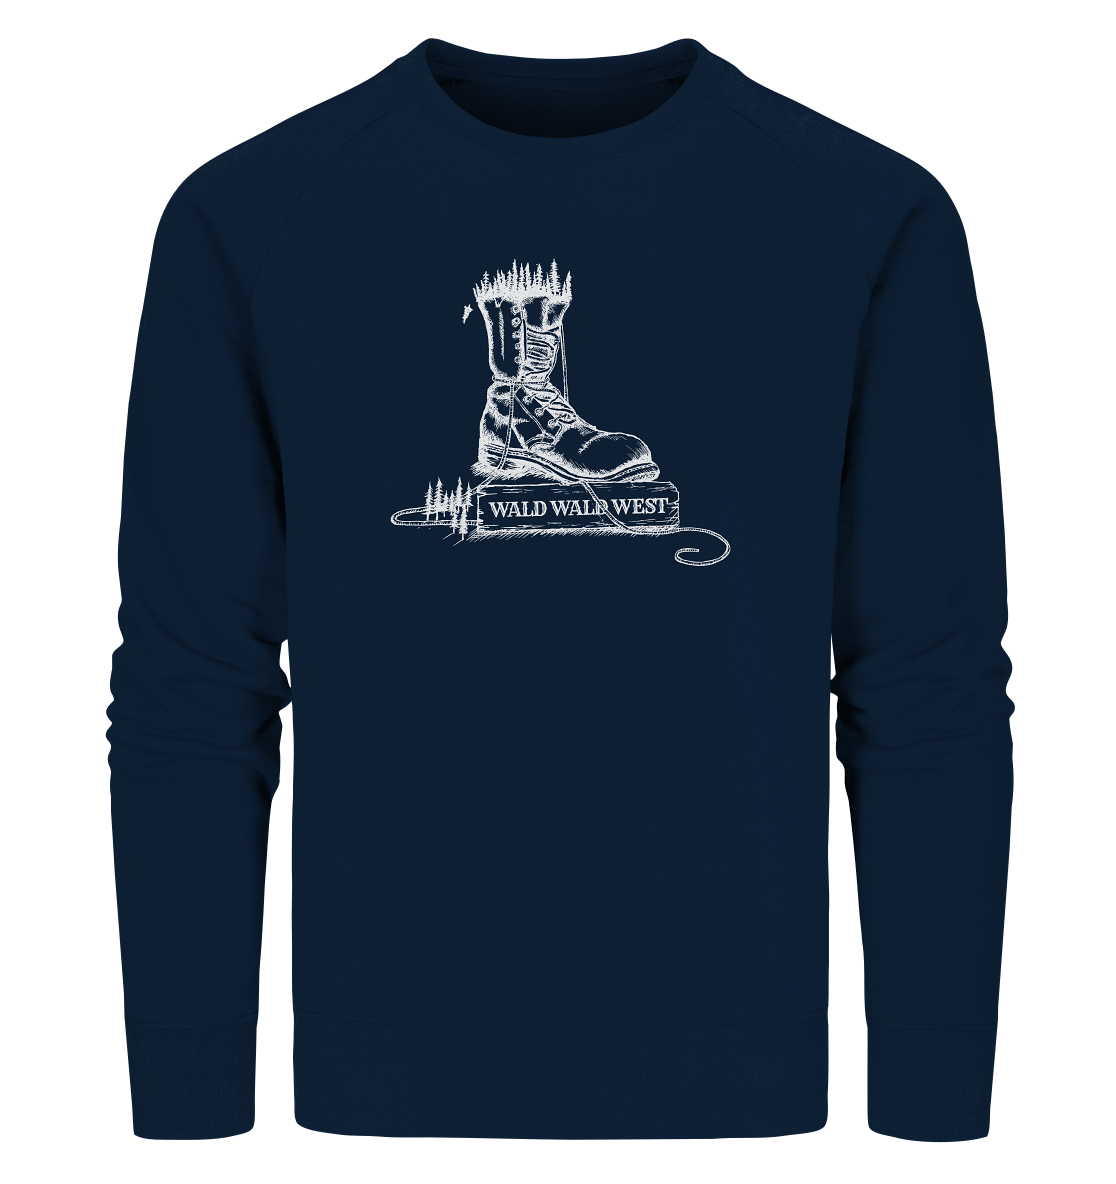 front-organic-sweatshirt-0e2035-1116x.png